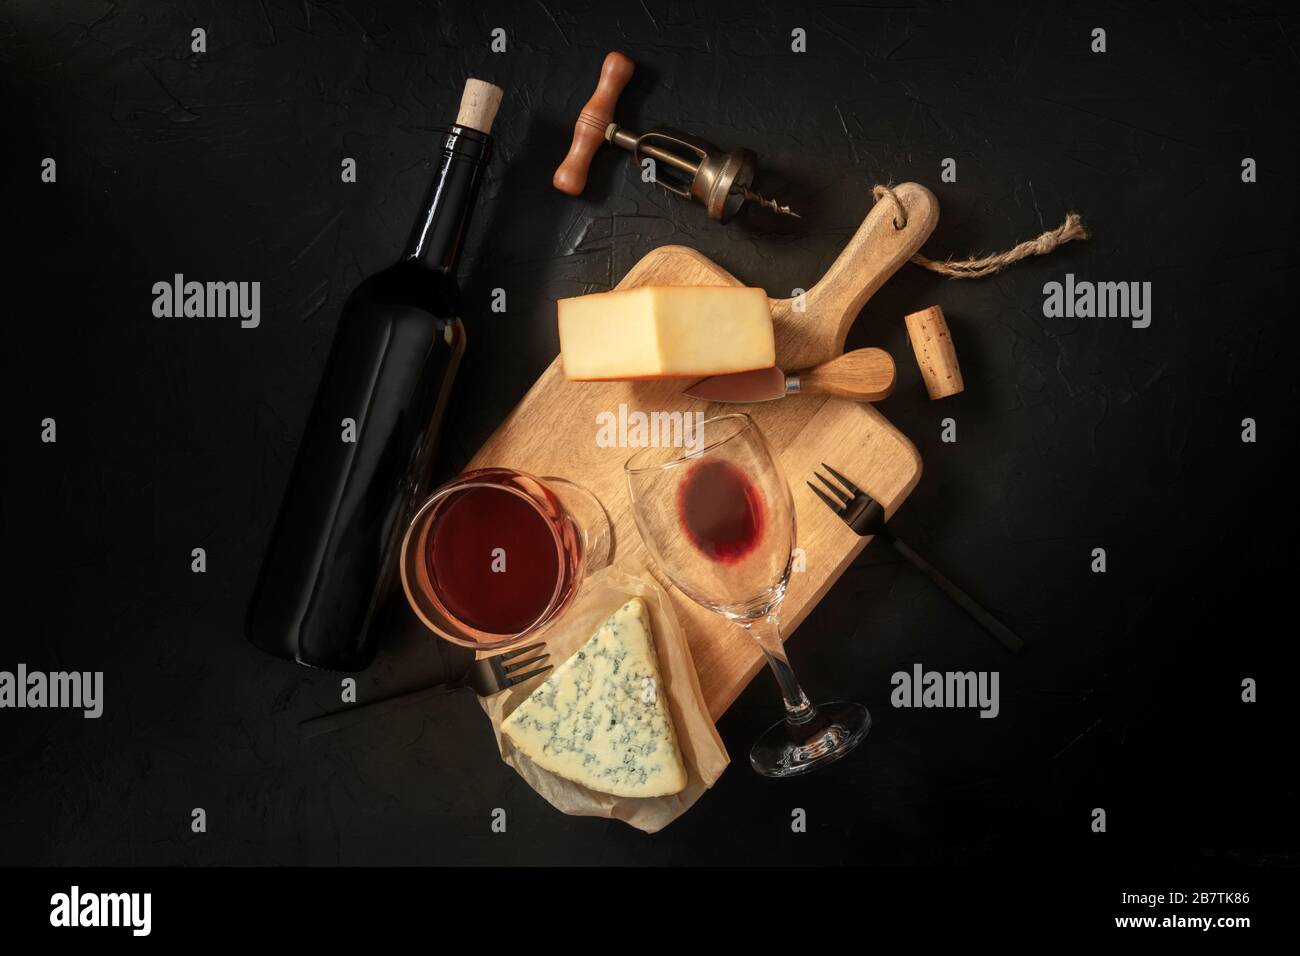 Degustazione di vini e formaggi, sparato su sfondo nero, con sughero, cavatappi e bottiglia Foto Stock